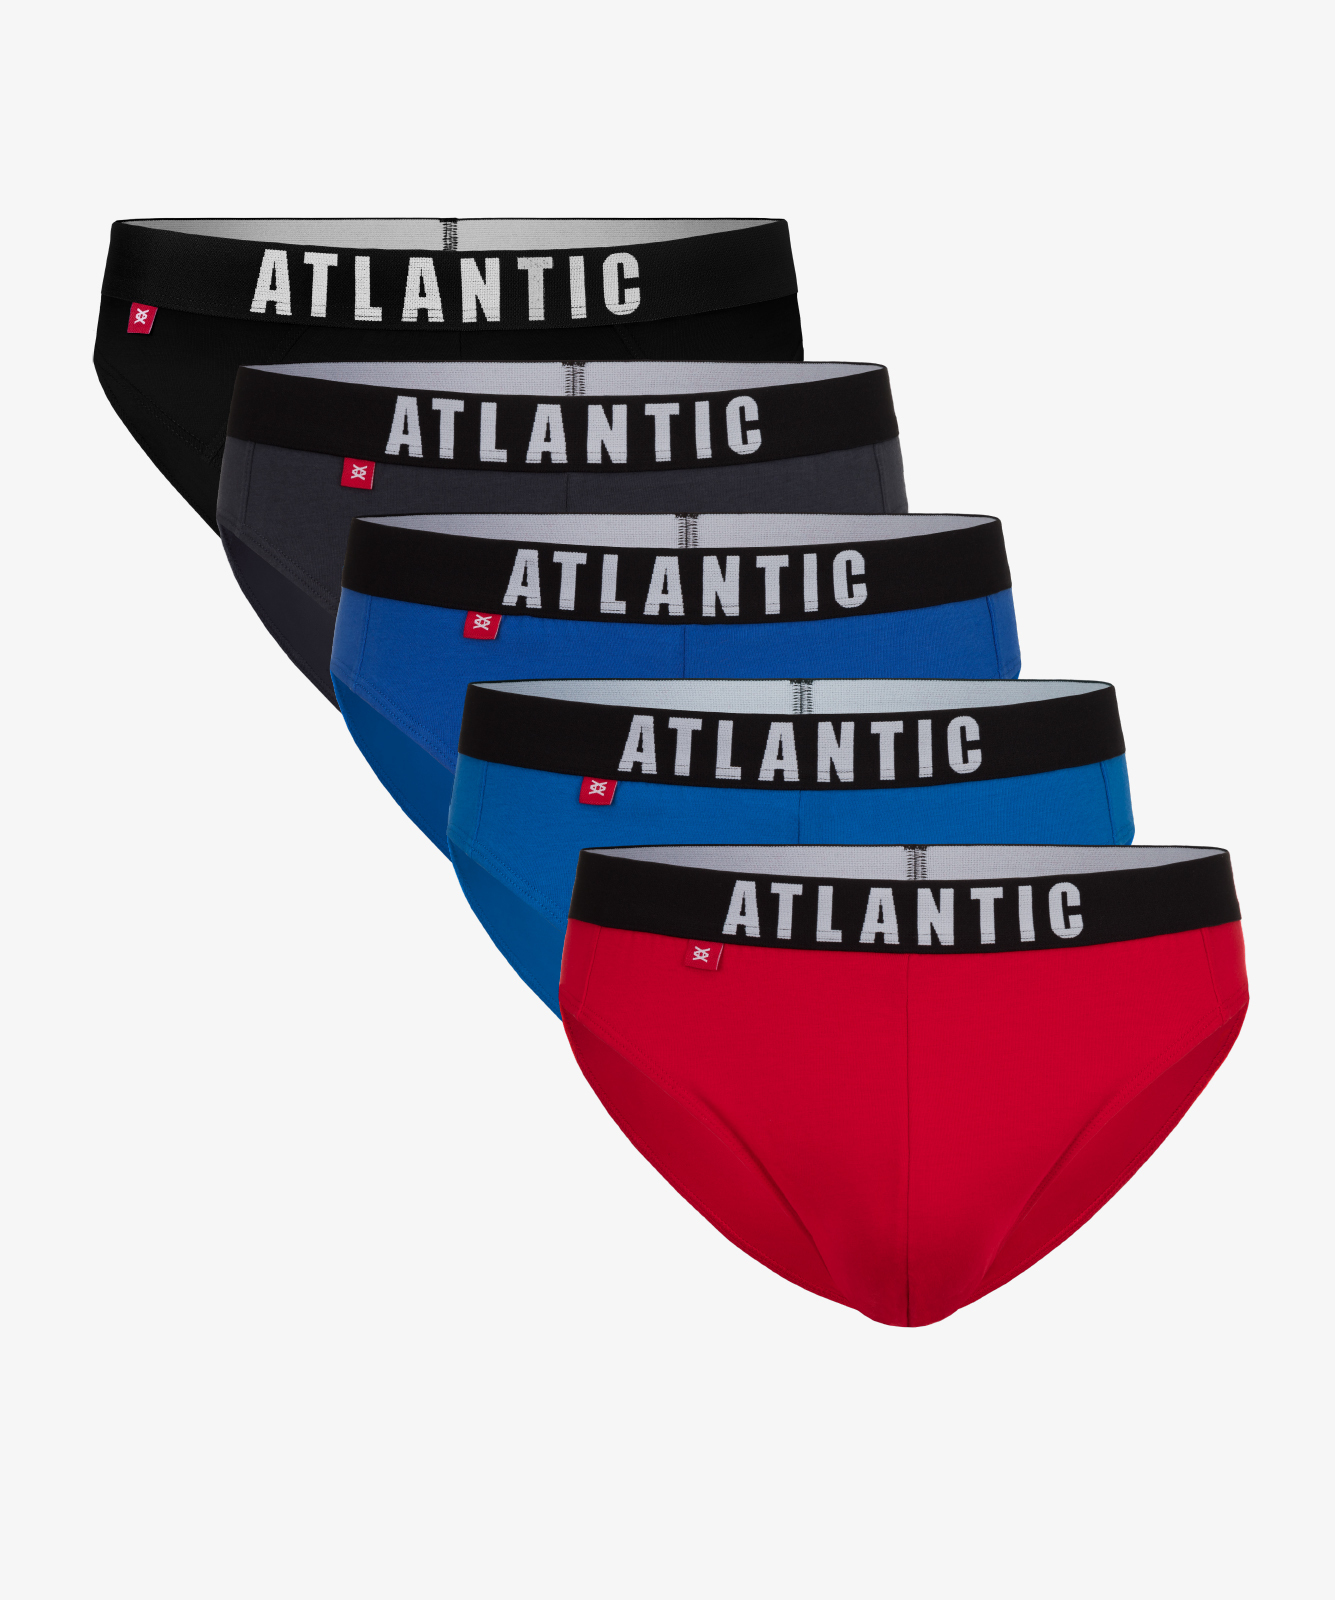 Мужские трусы слипы спорт Atlantic, набор 5 шт., хлопок, графит + черные + красные + голубые + бирюзовые, 5SMP-004